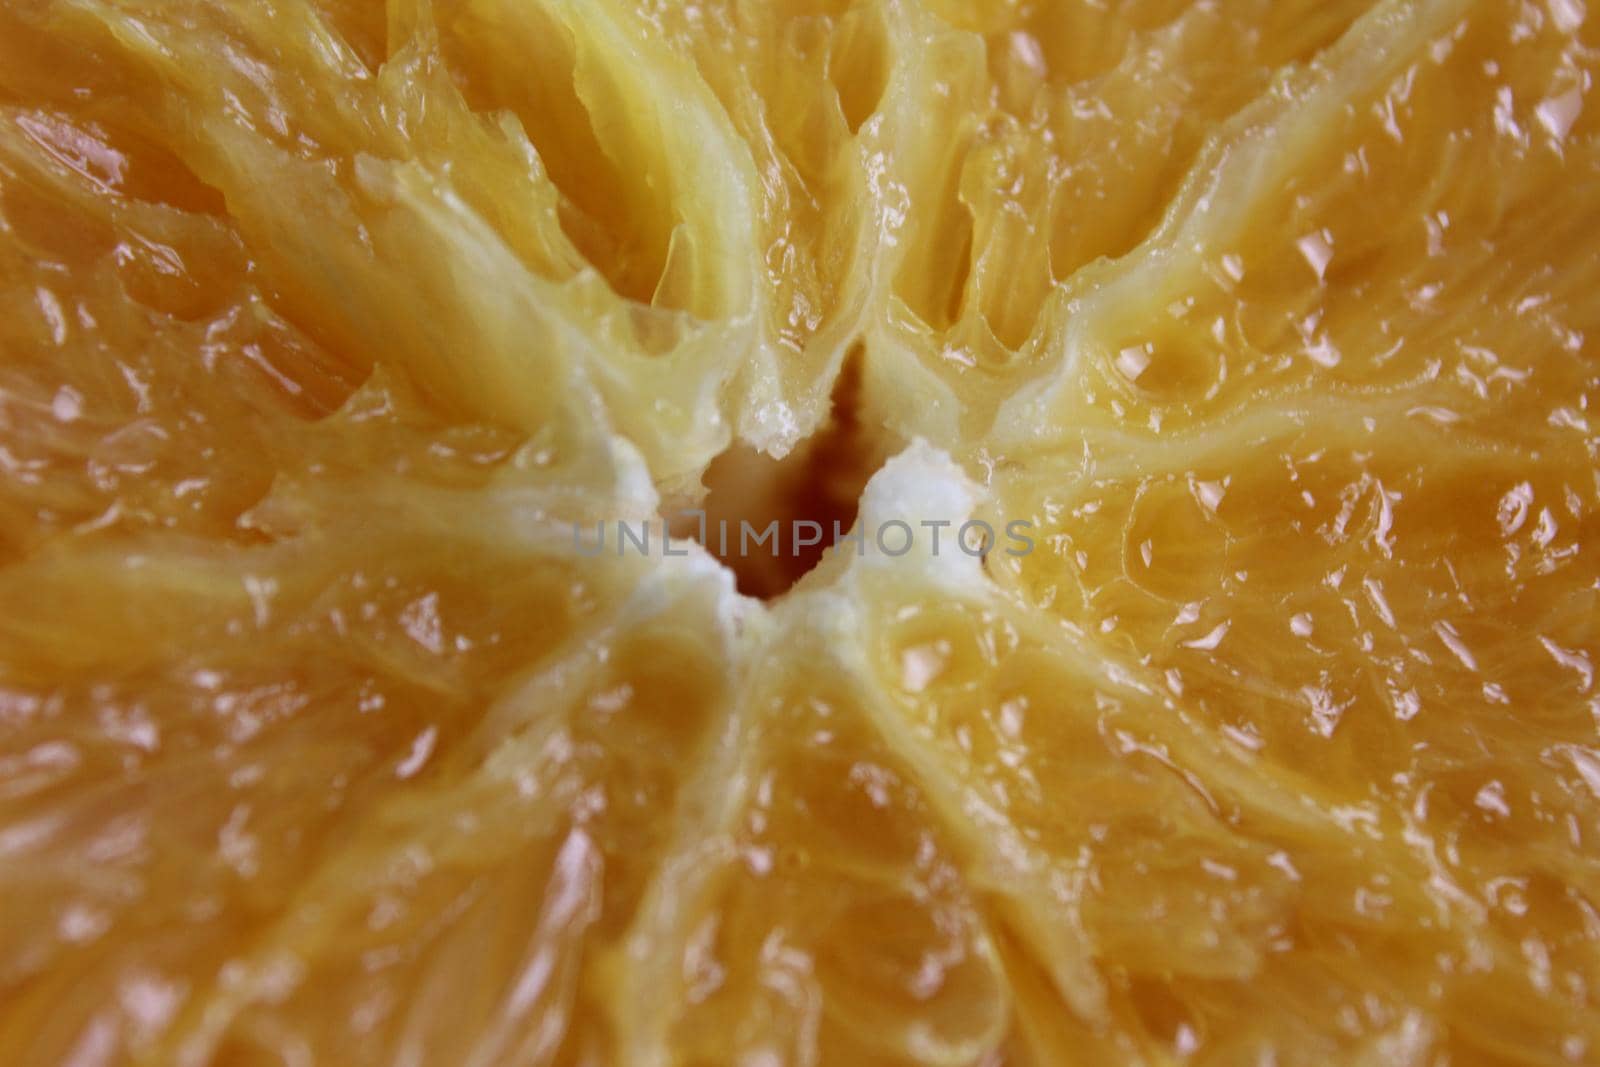 cut of the orange close-up. Macro photo of eating orange fruit. Orange fruit background.